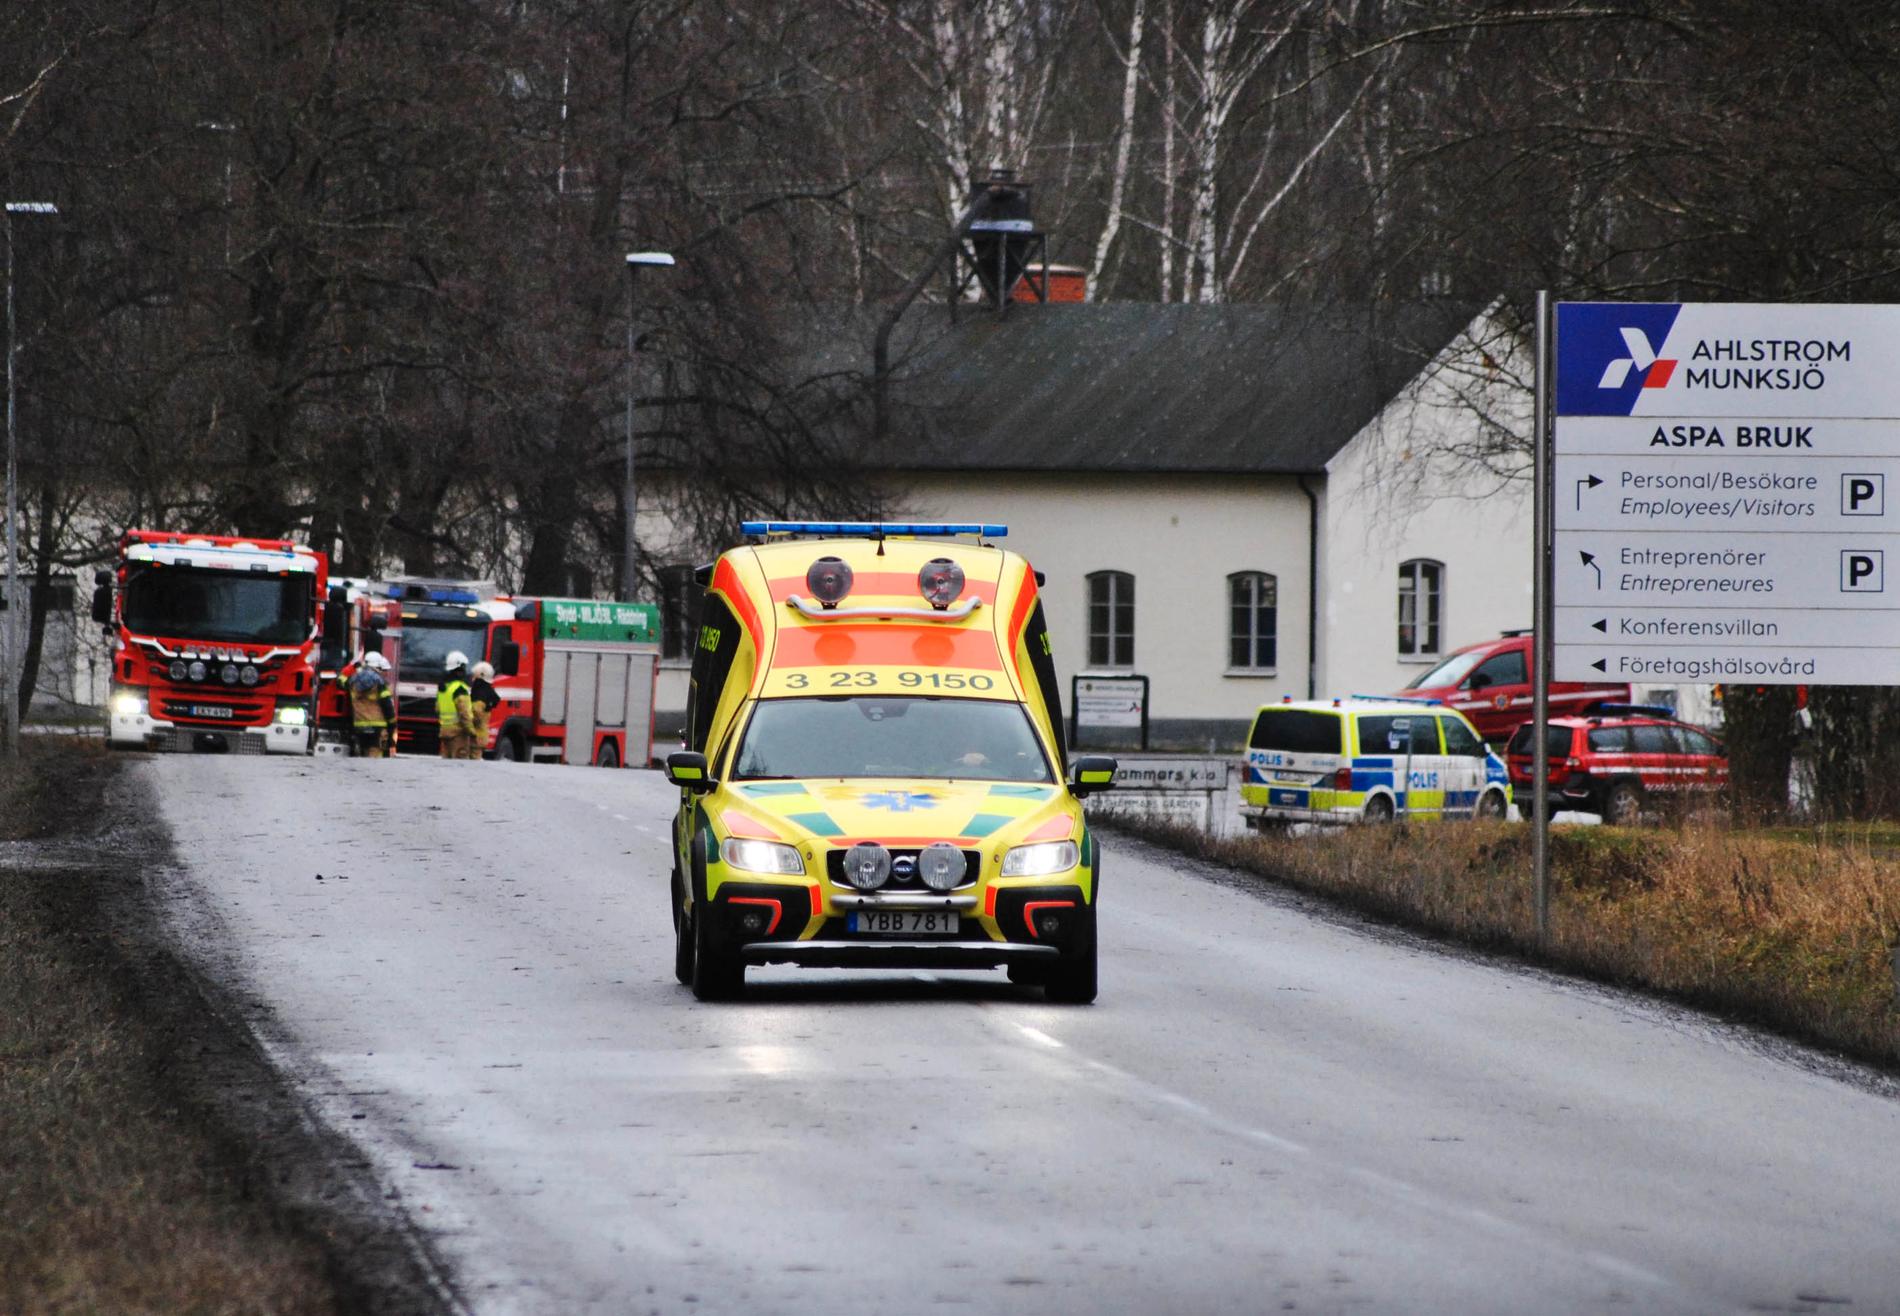 Polis, brandkår och ambulans på plats i Olshammar. Giftig gas läcker från Aspa bruk.